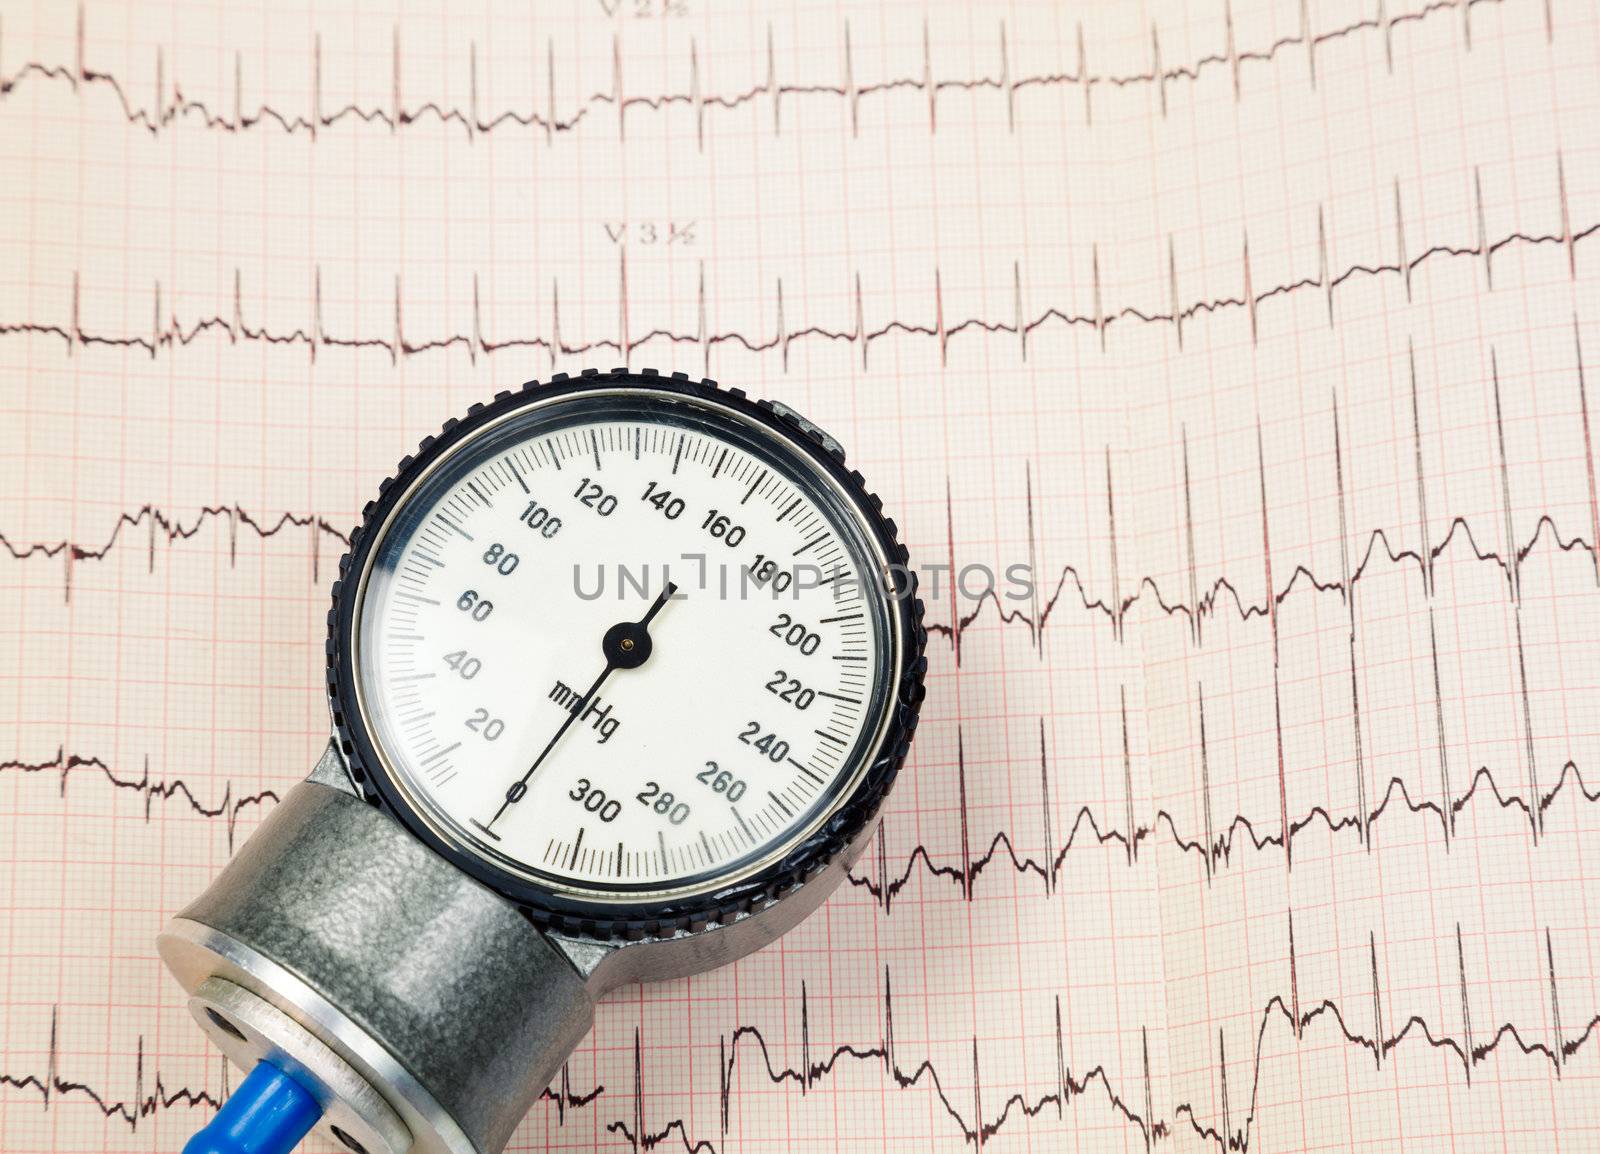 Blood pressure manometer on EKG by naumoid